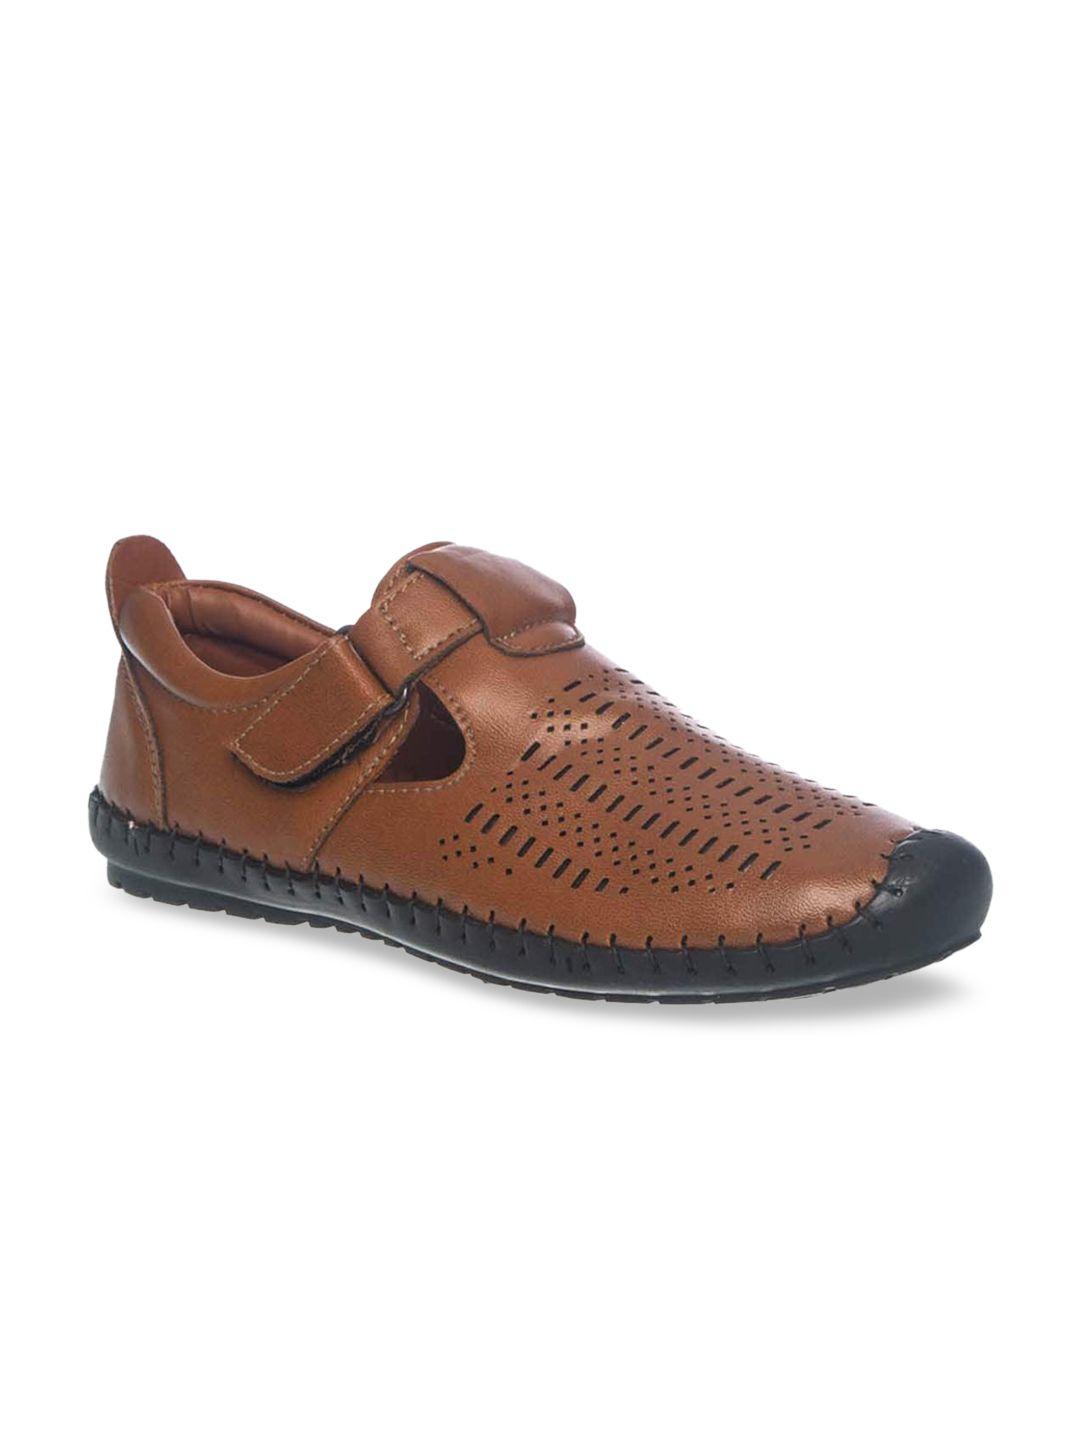 khadims boys tan brown sneakers